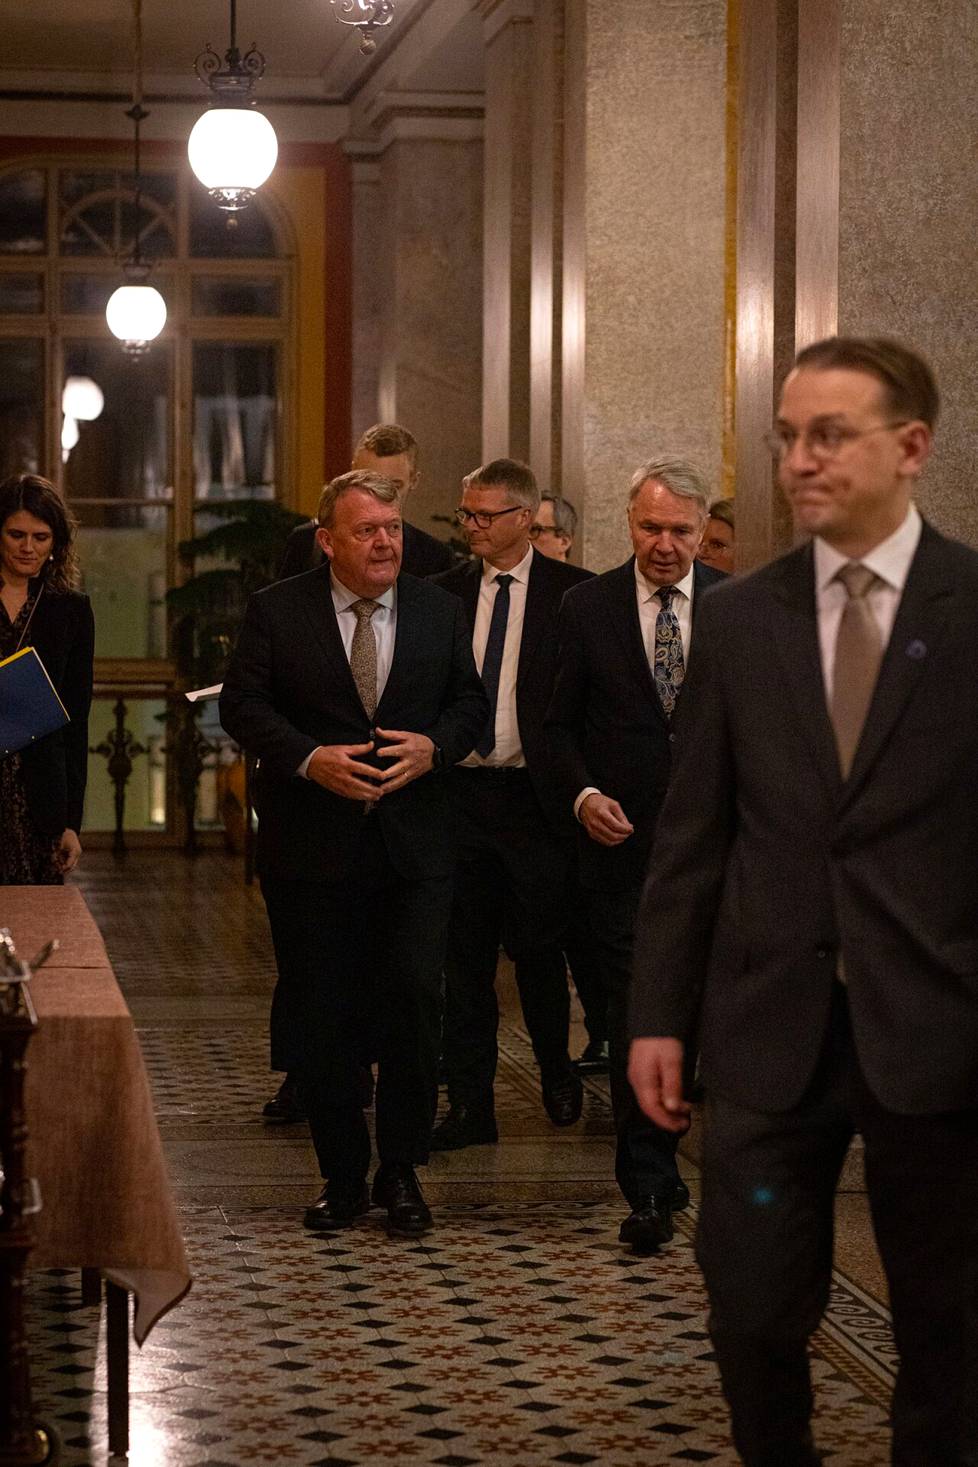 Ulkoministerit Pekka Haavisto ja Lars Løkke Rasmussen tapaavat Säätytalolla ensimmäistä kertaa Rasmussenin uuden viran alettua.